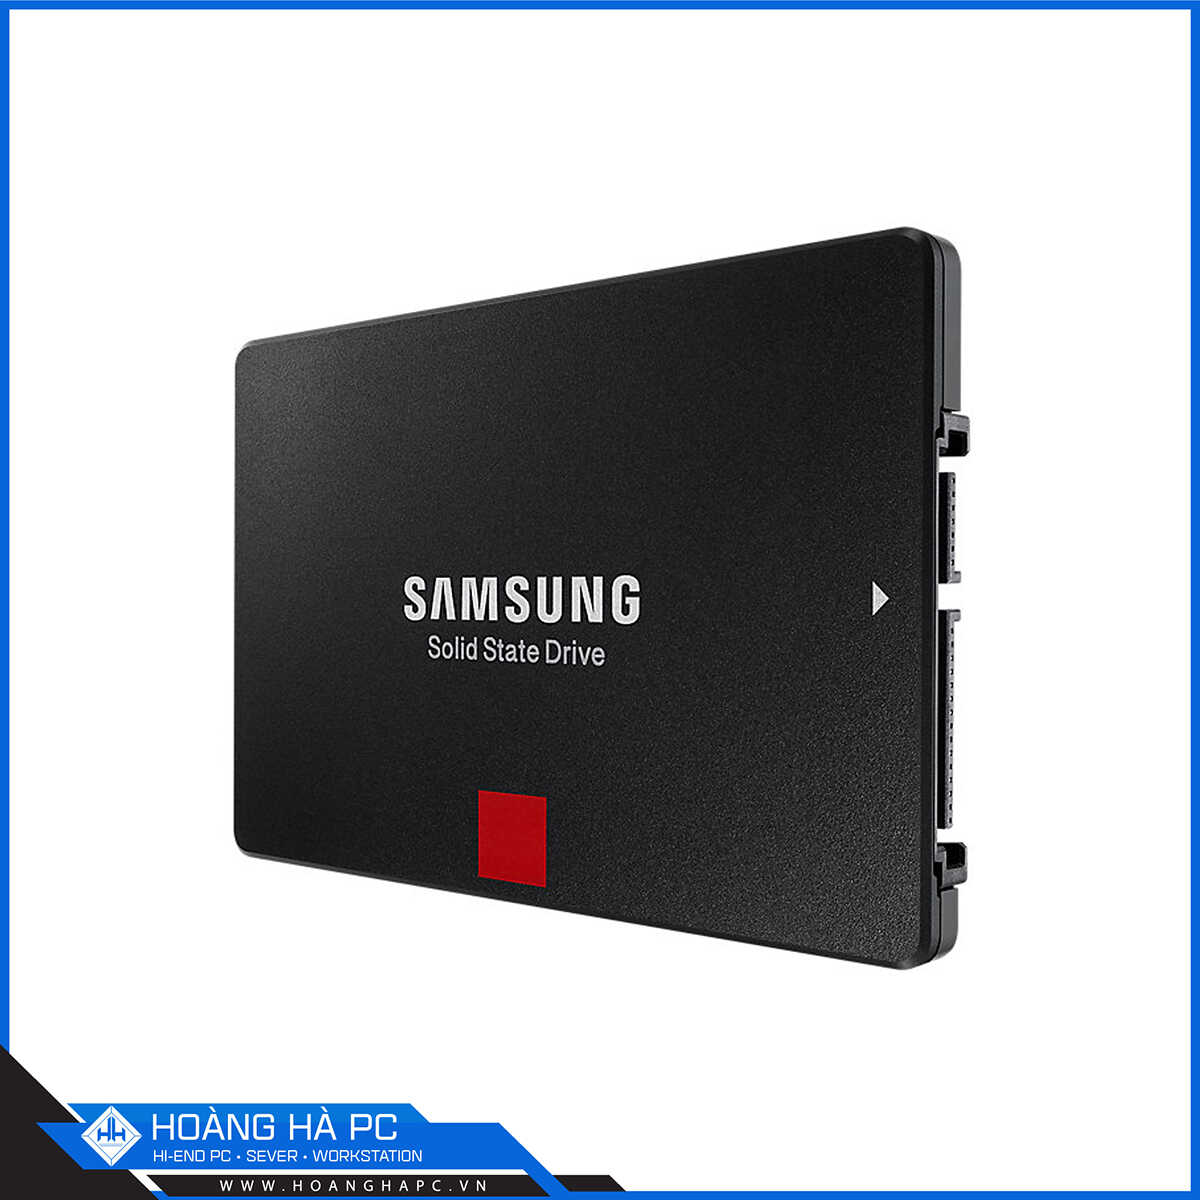 Ổ Cứng SSD Samsung 860 PRO 256GB (2.5 inch Sata3, Đọc 560MB/s, Ghi 530MB/s)